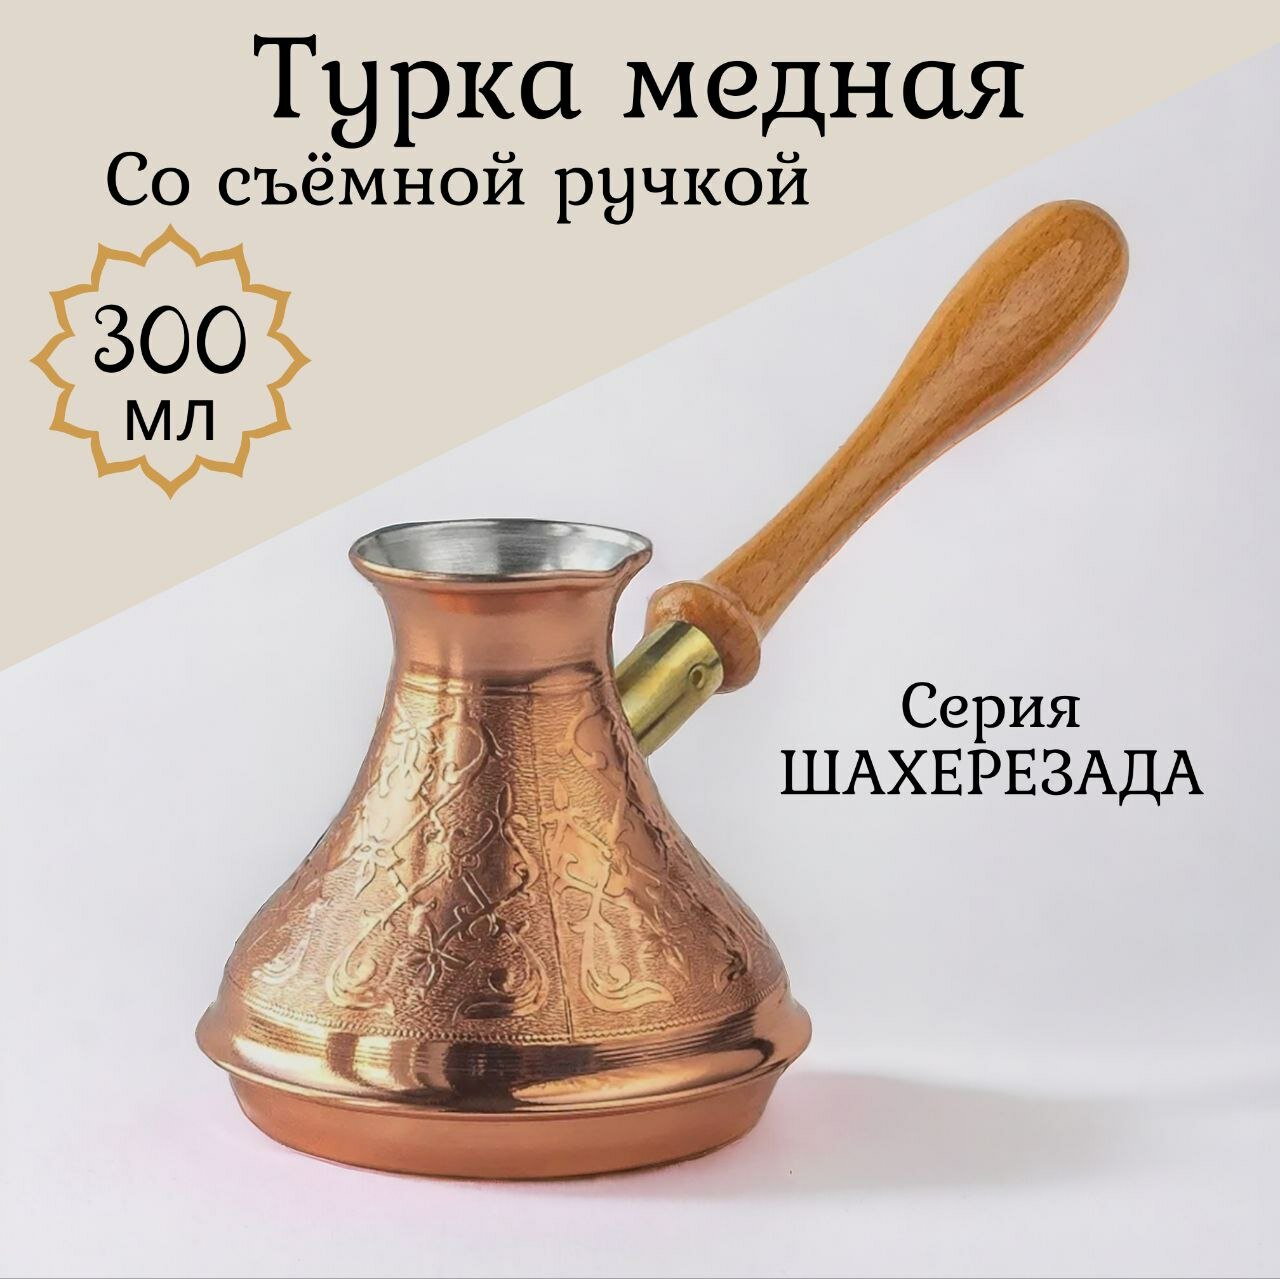 Кофеварка (турка) Tima "Шахерезада" съемная ручка 300 мл.